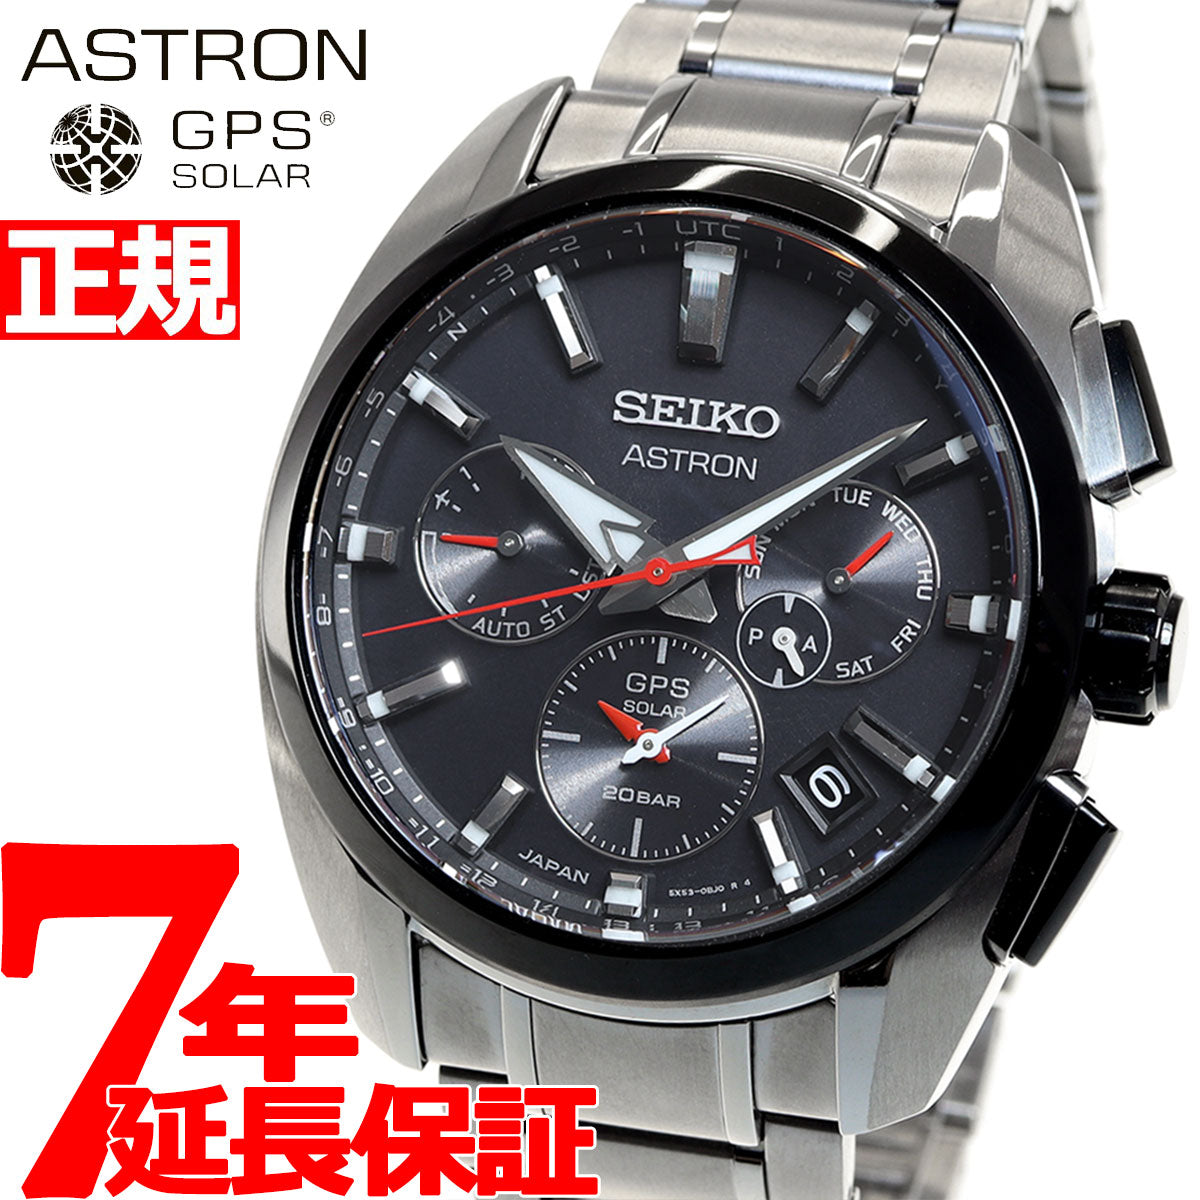 セイコー アストロン SEIKO ASTRON GPSソーラーウオッチ ソーラーGPS衛星電波時計 腕時計 メンズ SBXC103